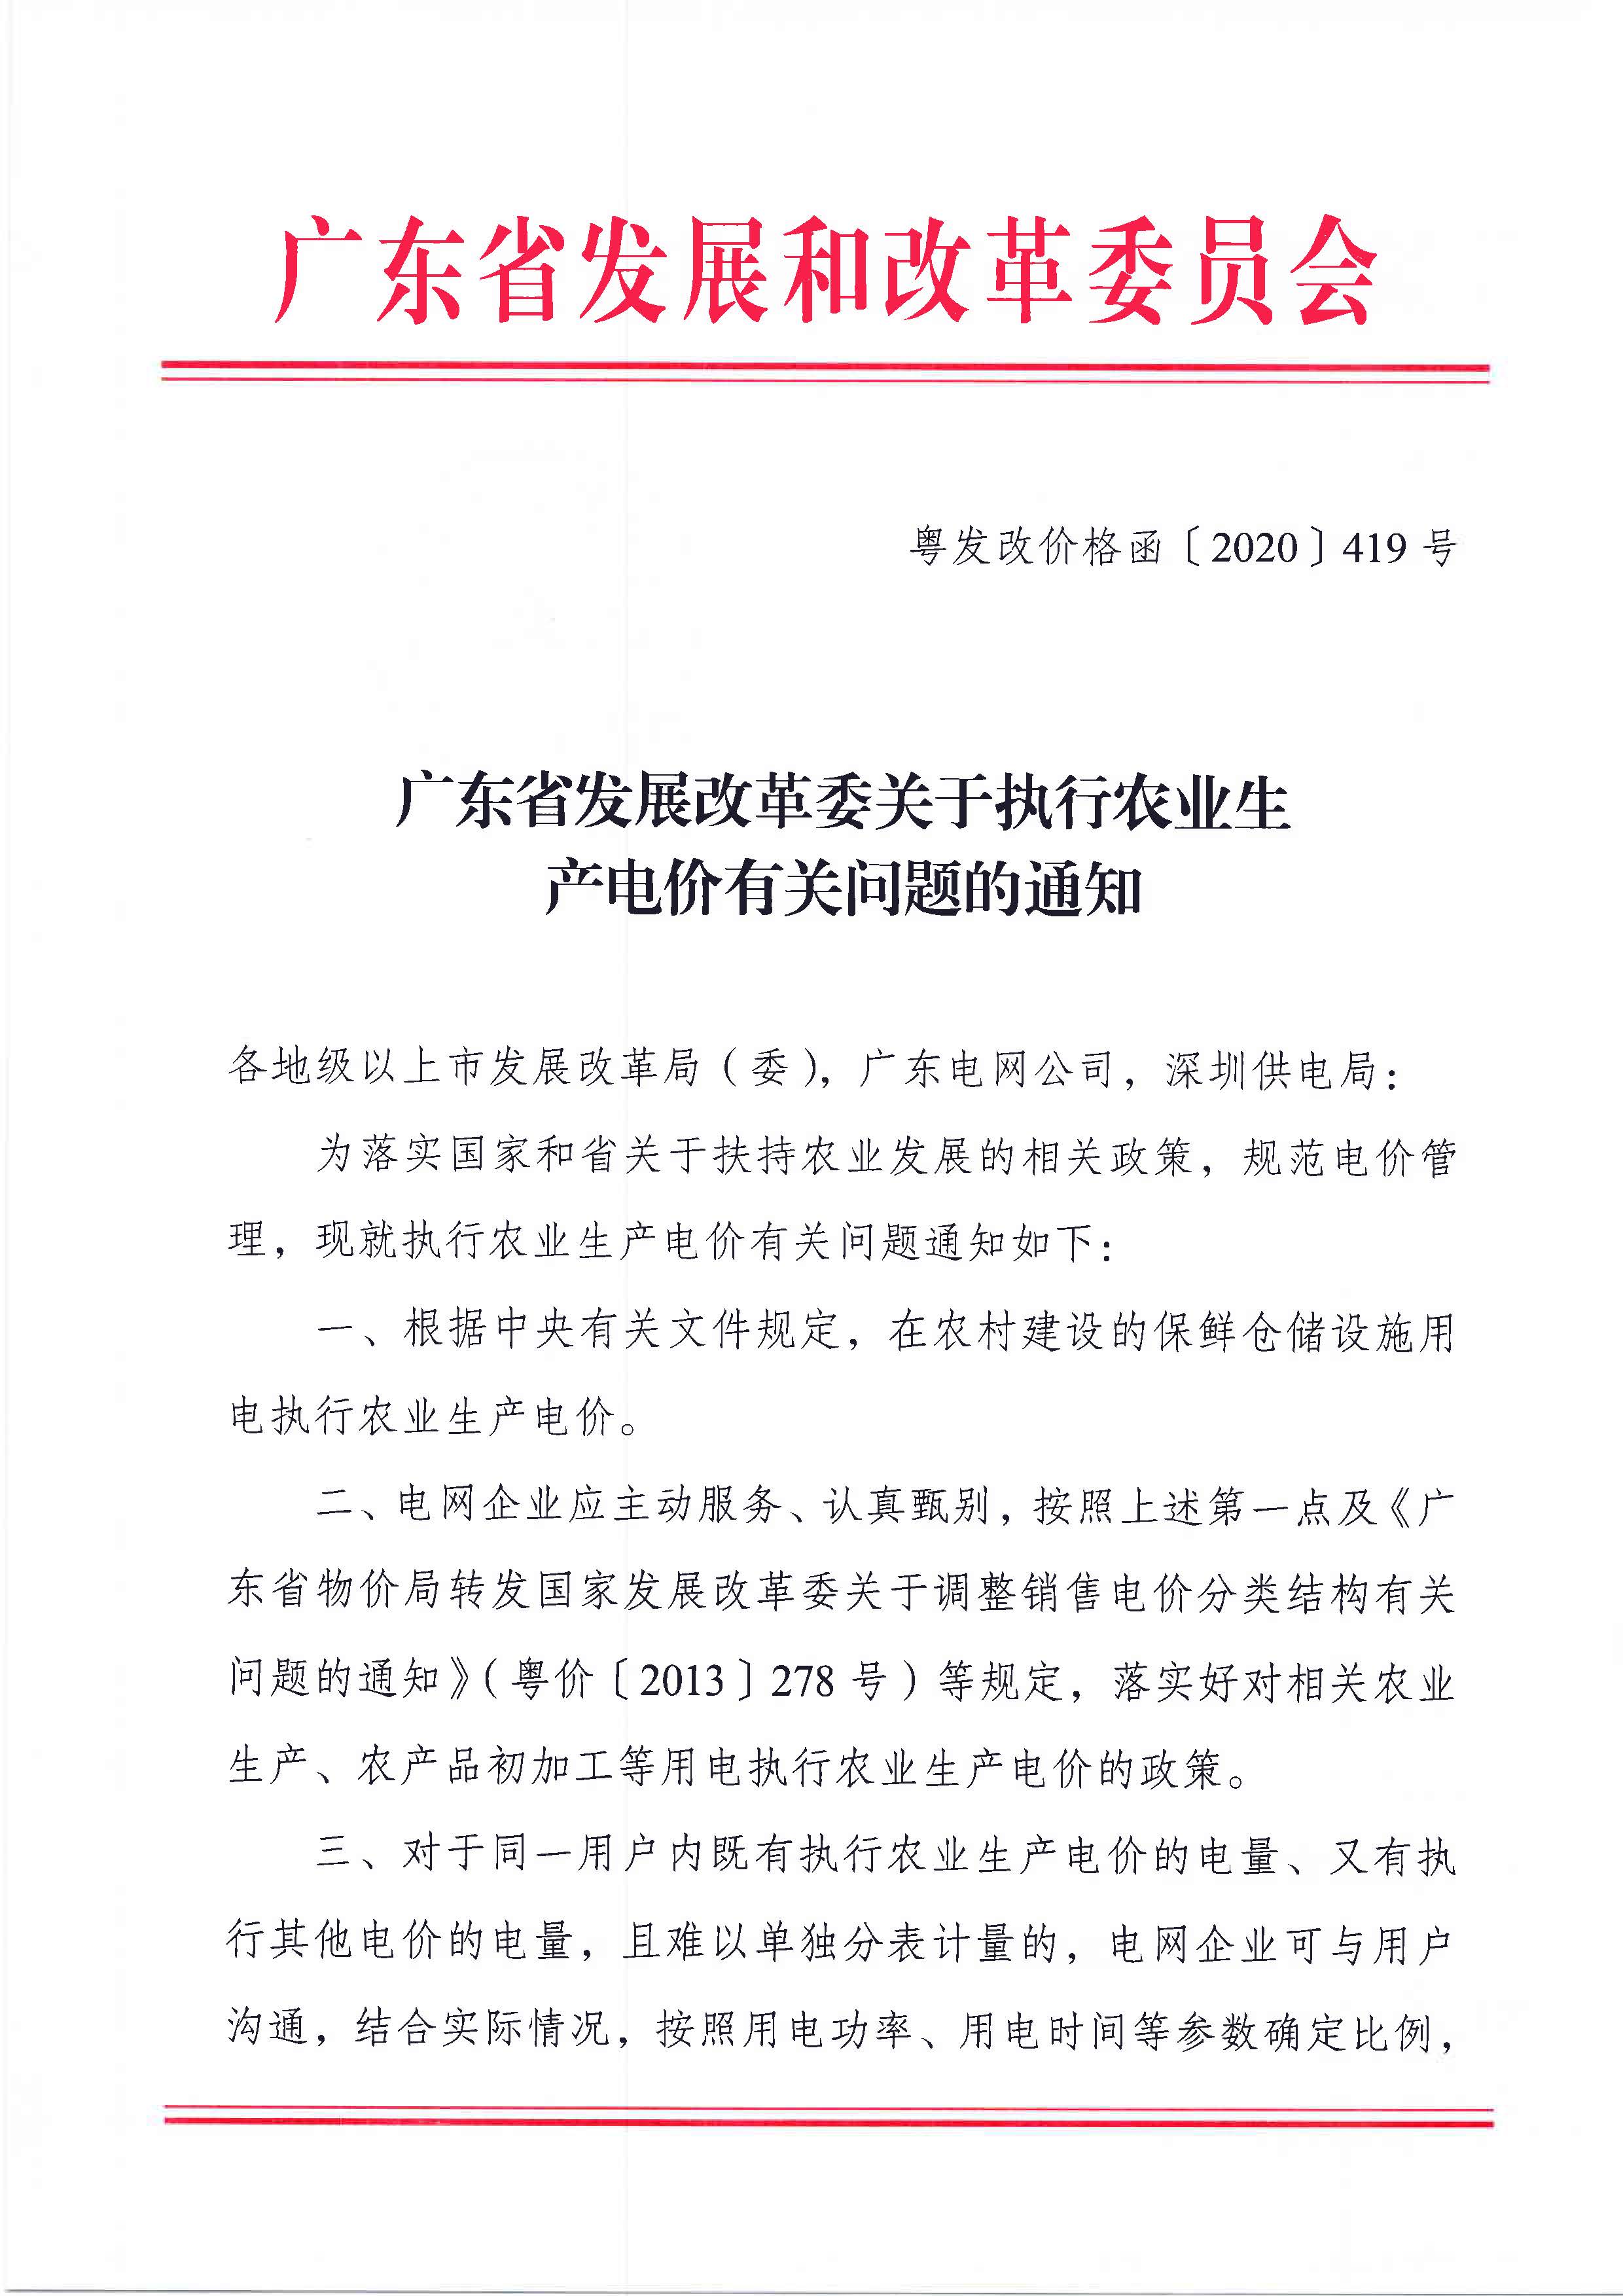 广东省发展改革委关于执行农业生产电价有关问题的通知_页面_1.jpg